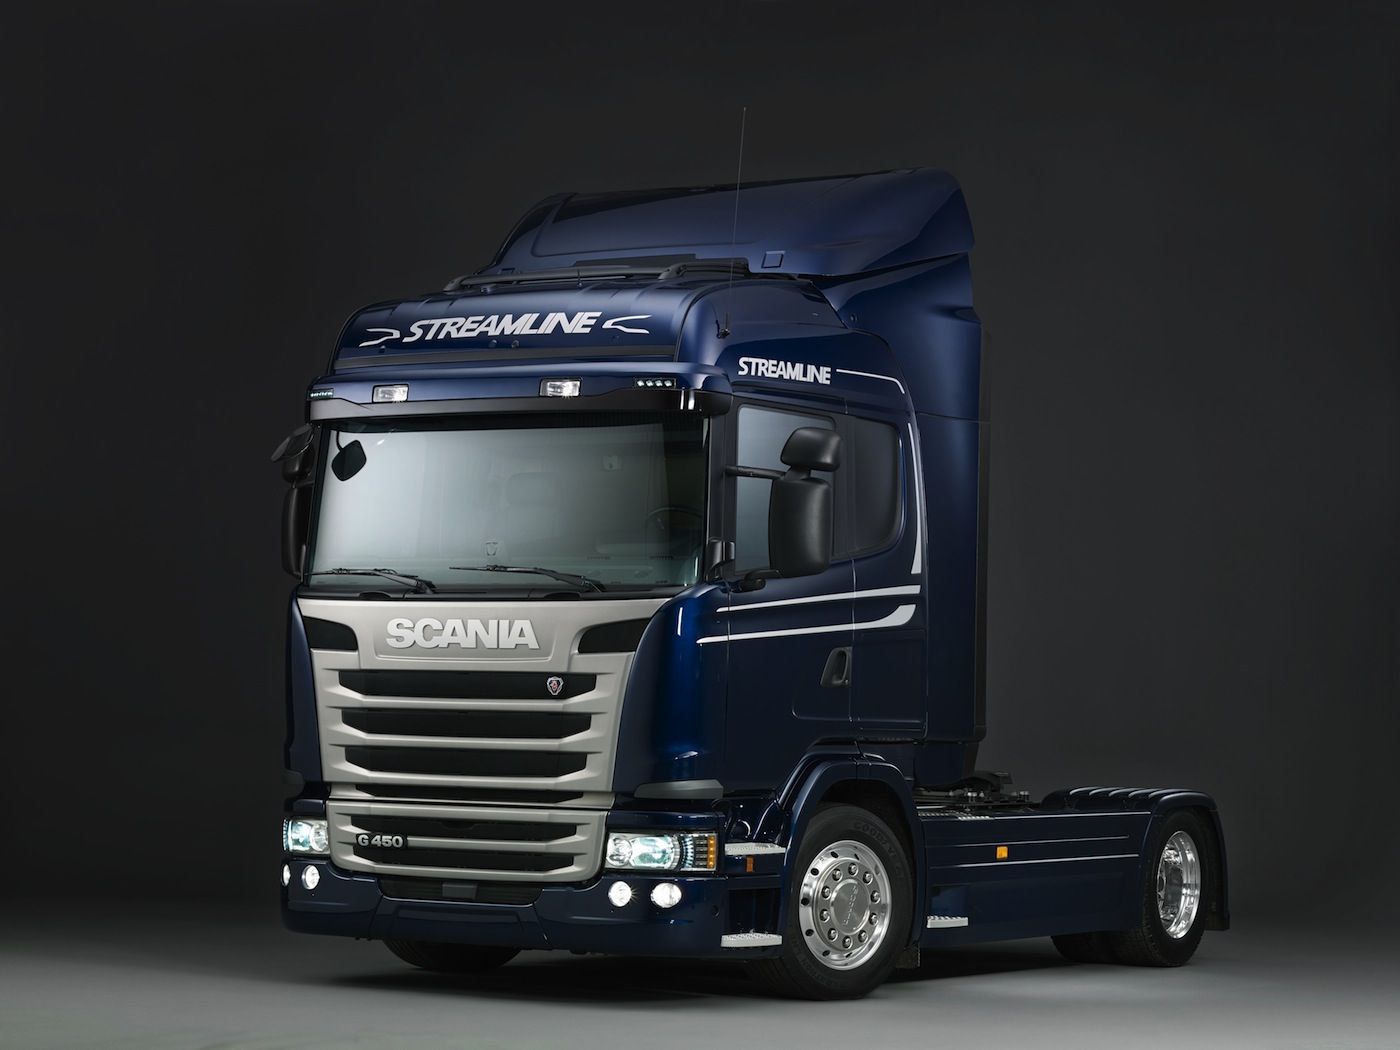 Nuevo Scania Streamline R490, que puede reducir el consumo hasta en un 8%